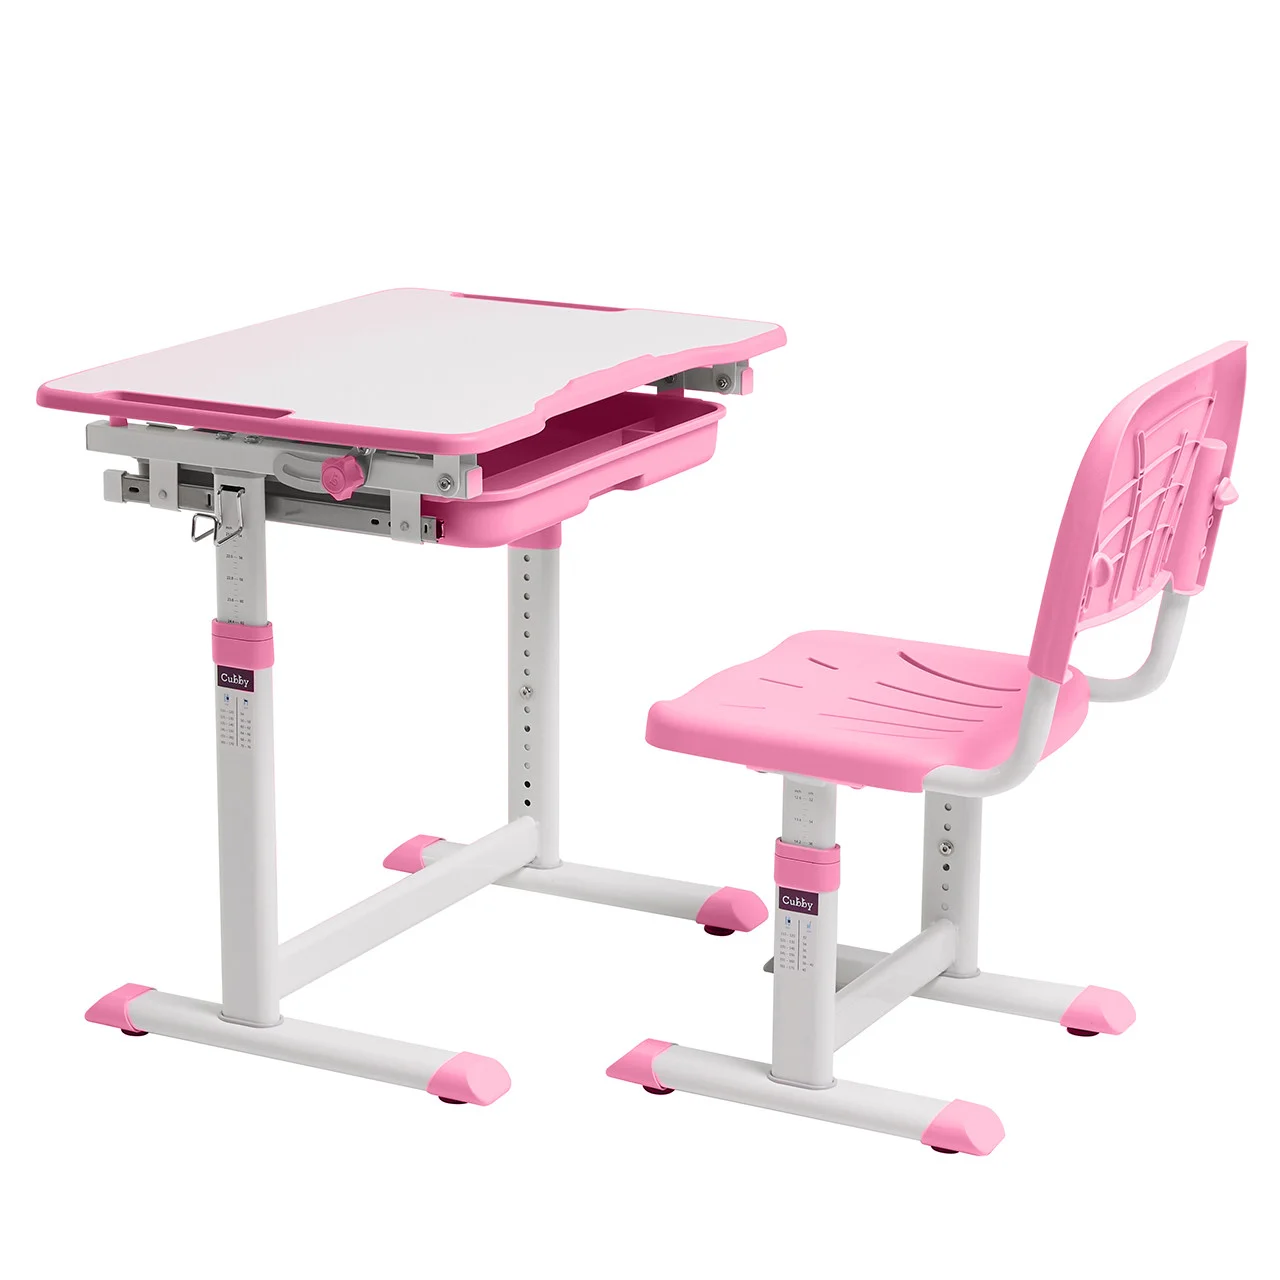 Cubby Комплект парта + стул трансформеры Sorpresa Pink (розовый)